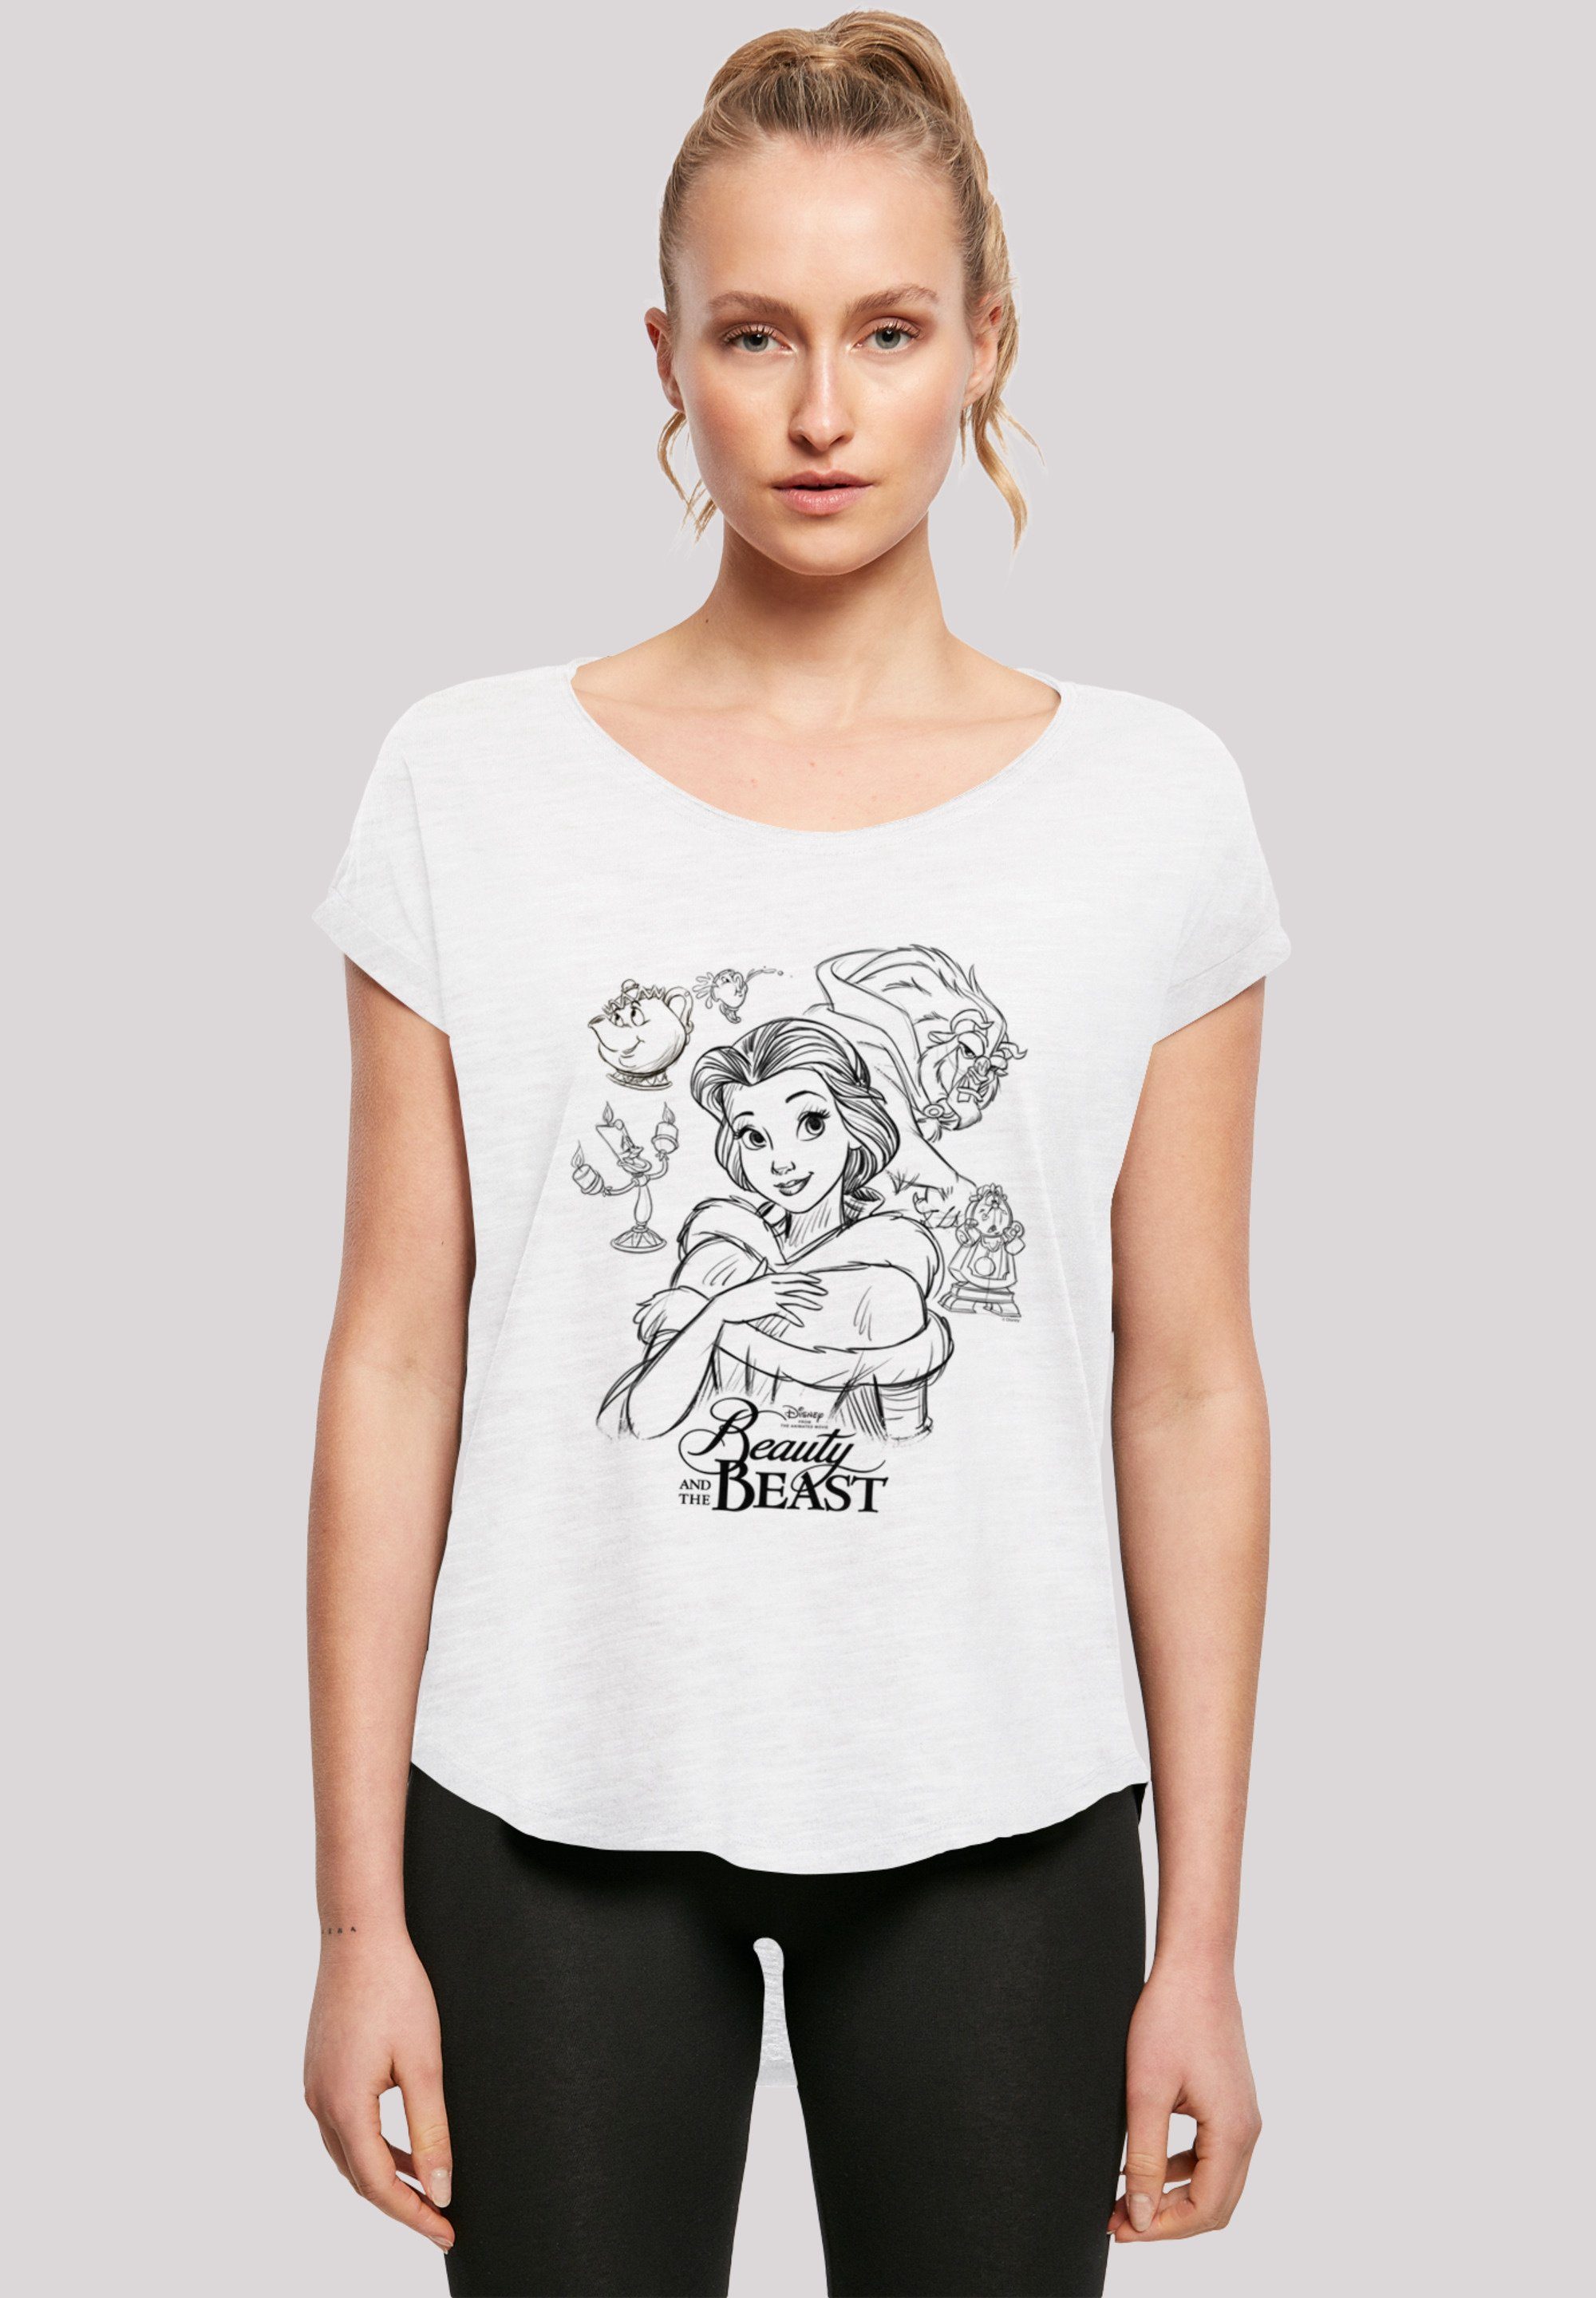 F4NT4STIC T-Shirt das Collage Schöne und Disney Die Zeichnung Biest Print